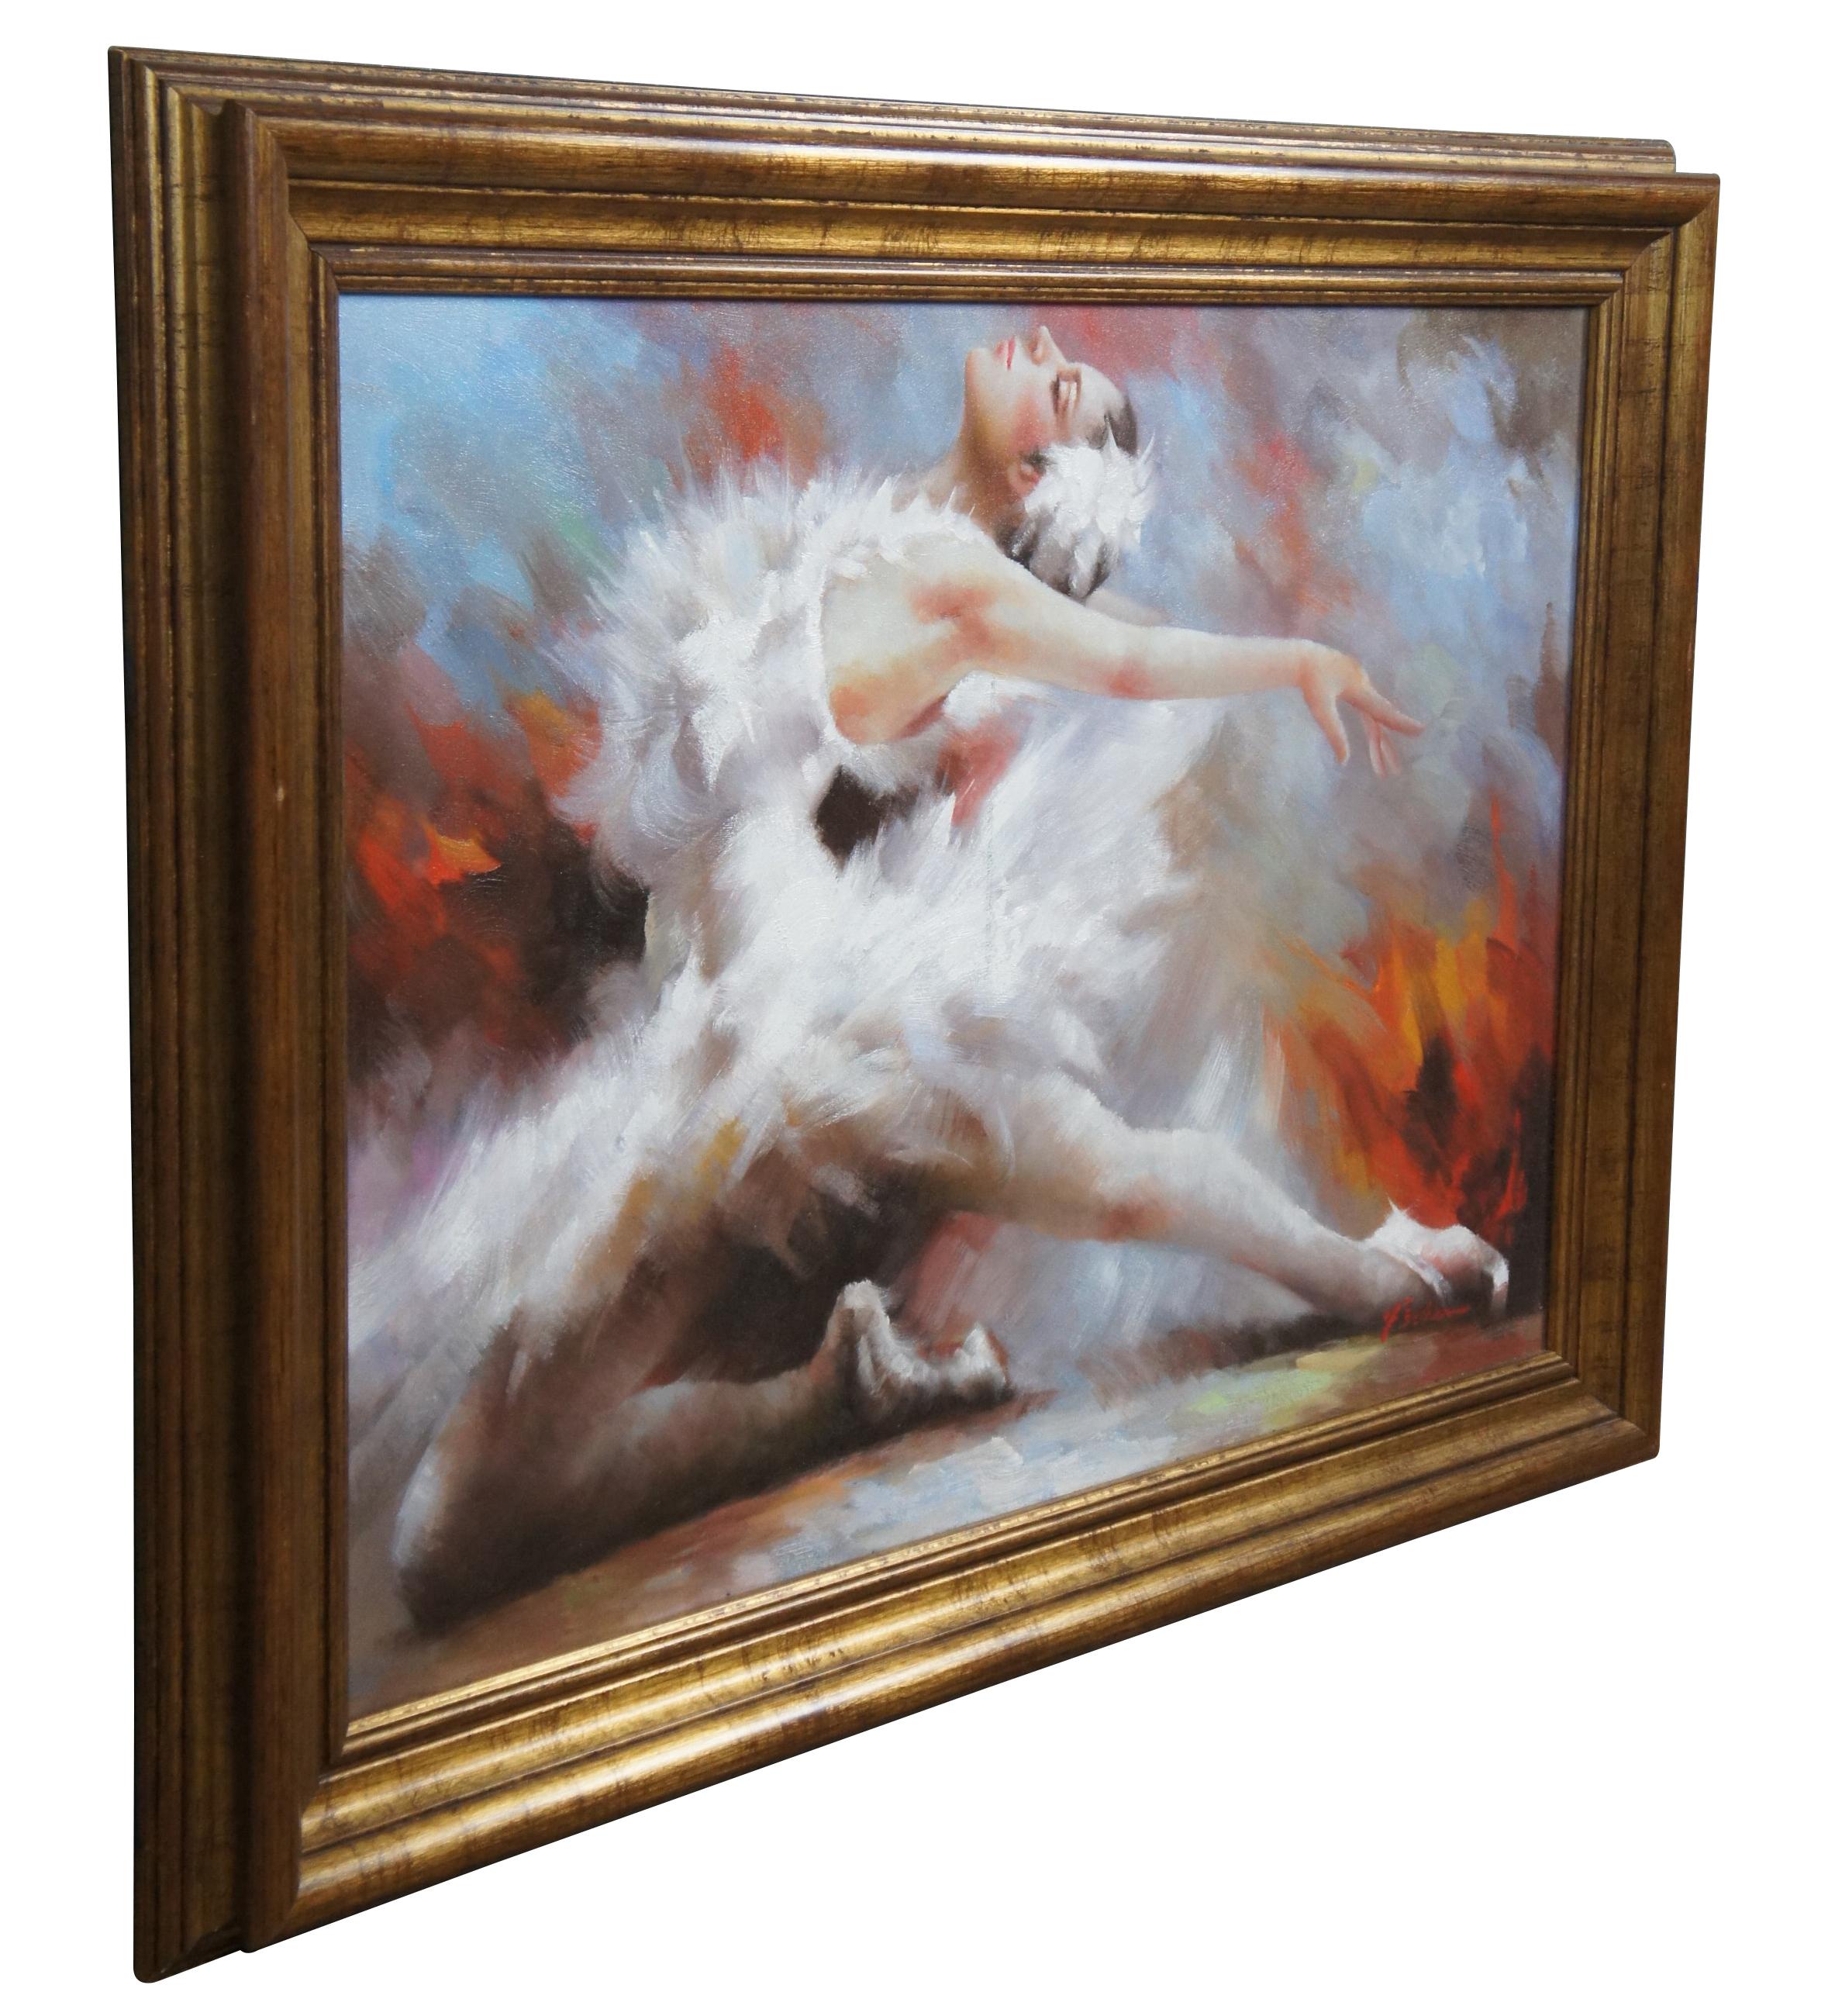 Peinture à l'huile de style impressionniste représentant une ballerine prenant la pose. Signé en bas à droite par Fisher. Encadré en or.

Dimensions

42